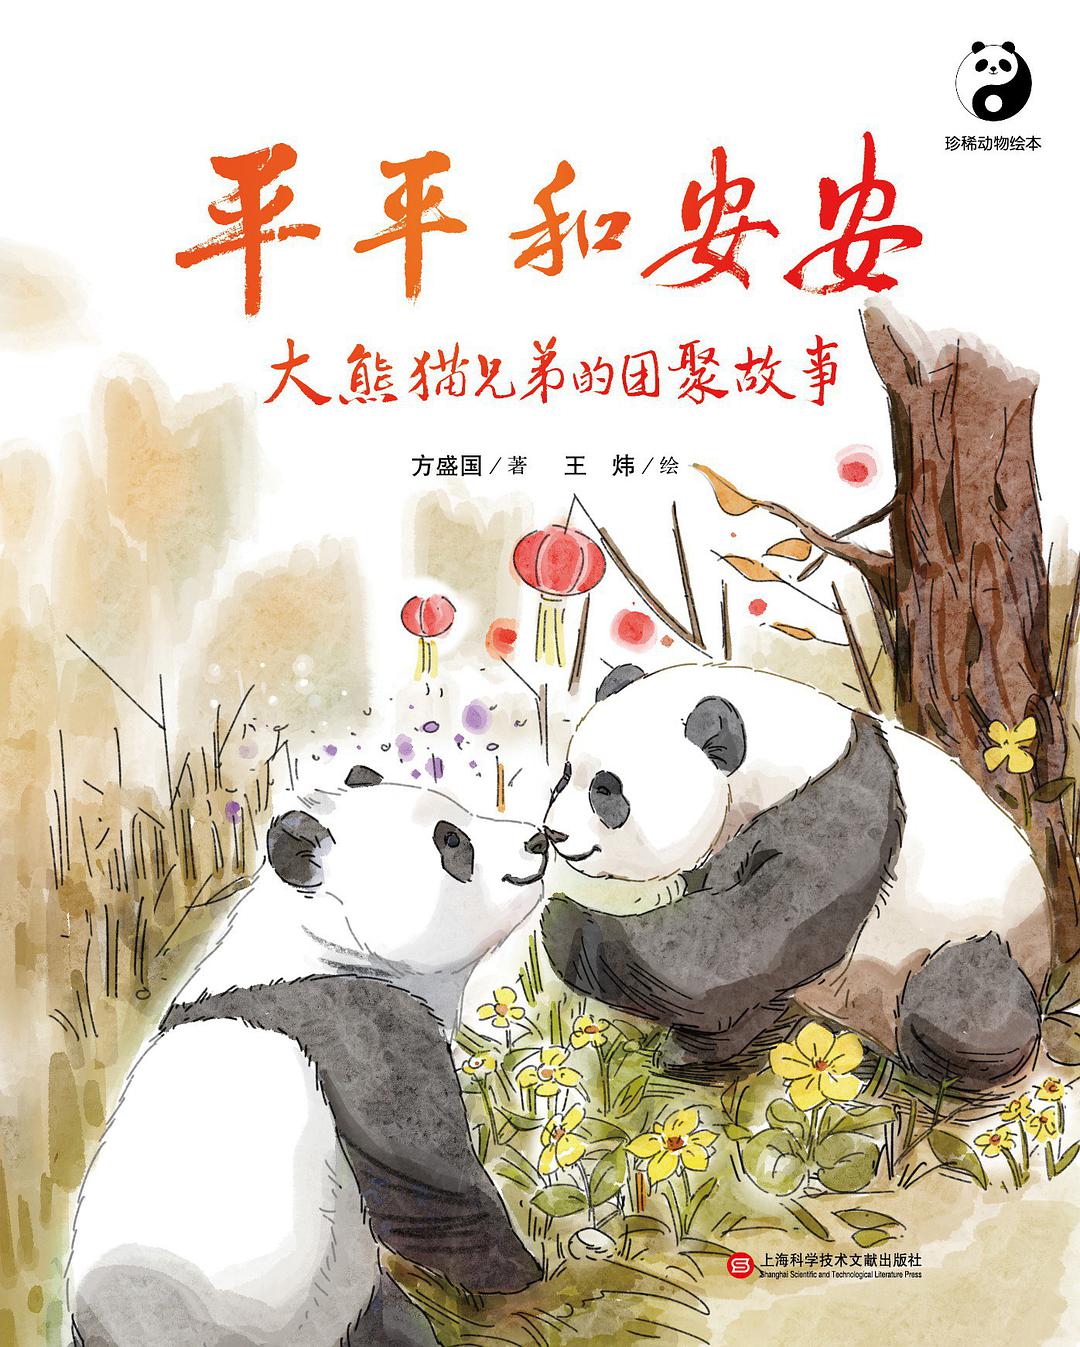 平平和安安 大熊猫兄弟的团聚故事